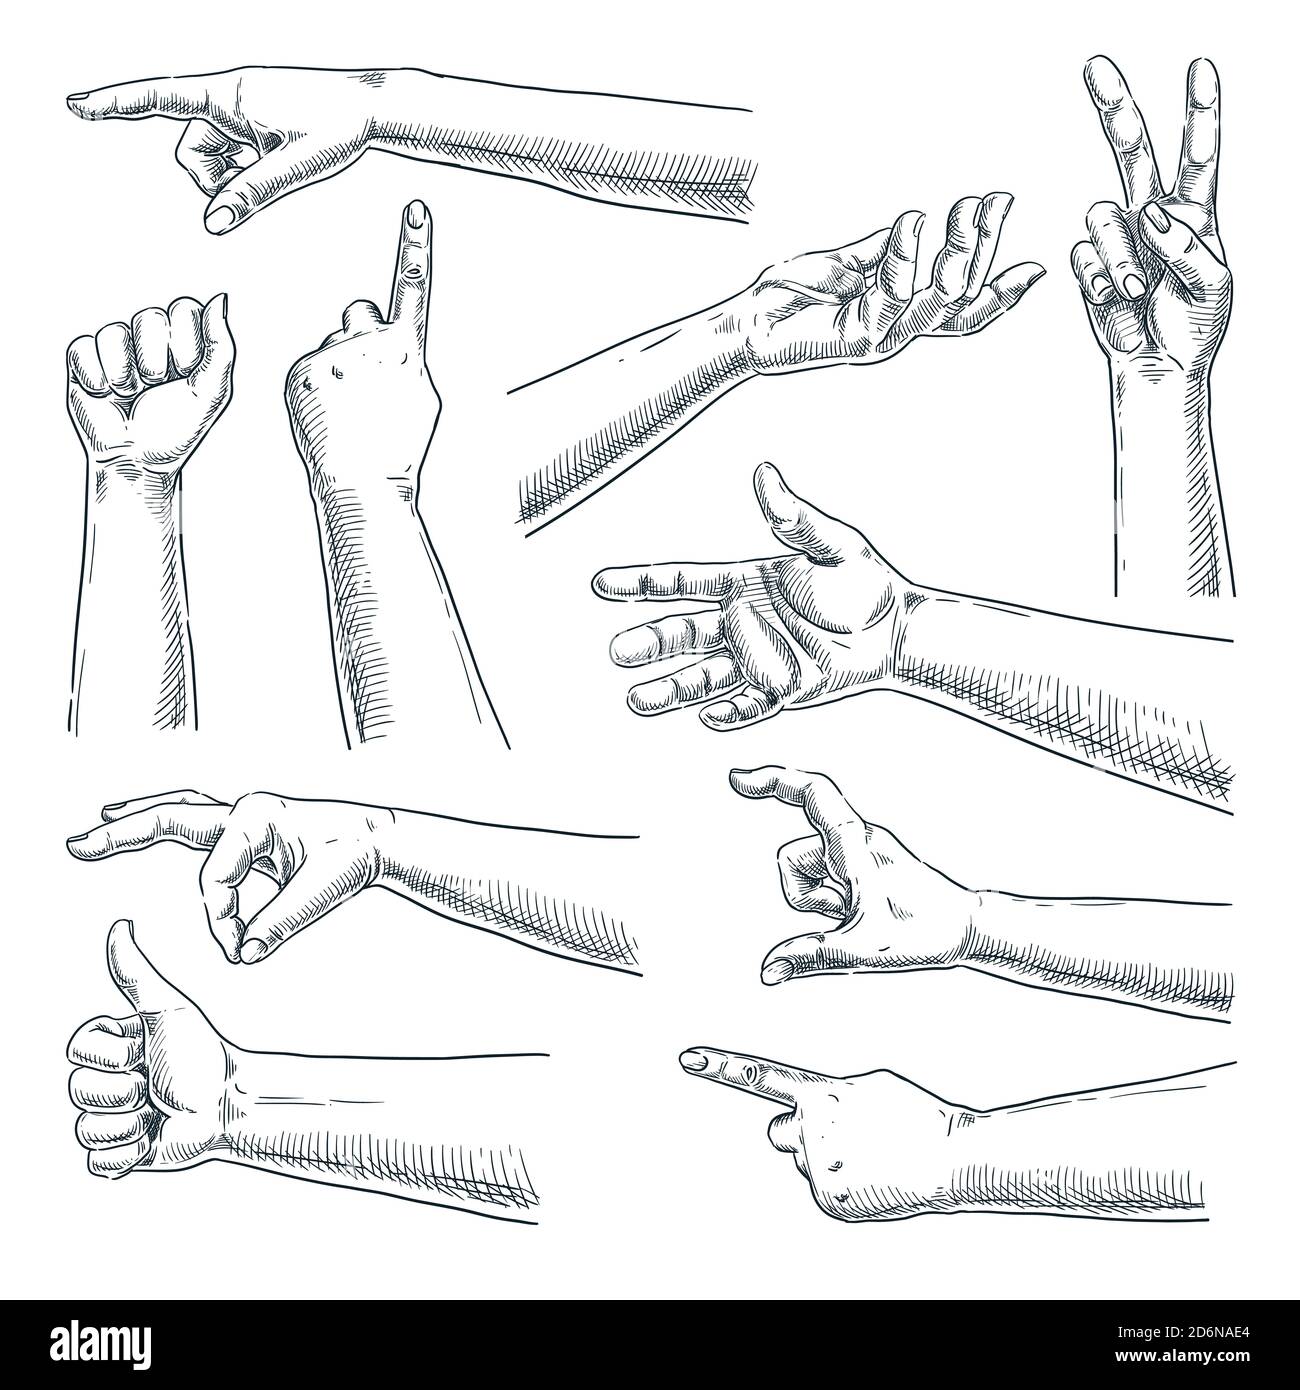 Mouvement des mains et des doigts. Illustration vectorielle dessinée à la main. Collection de mains pour hommes ou femmes, isolée sur fond blanc Illustration de Vecteur